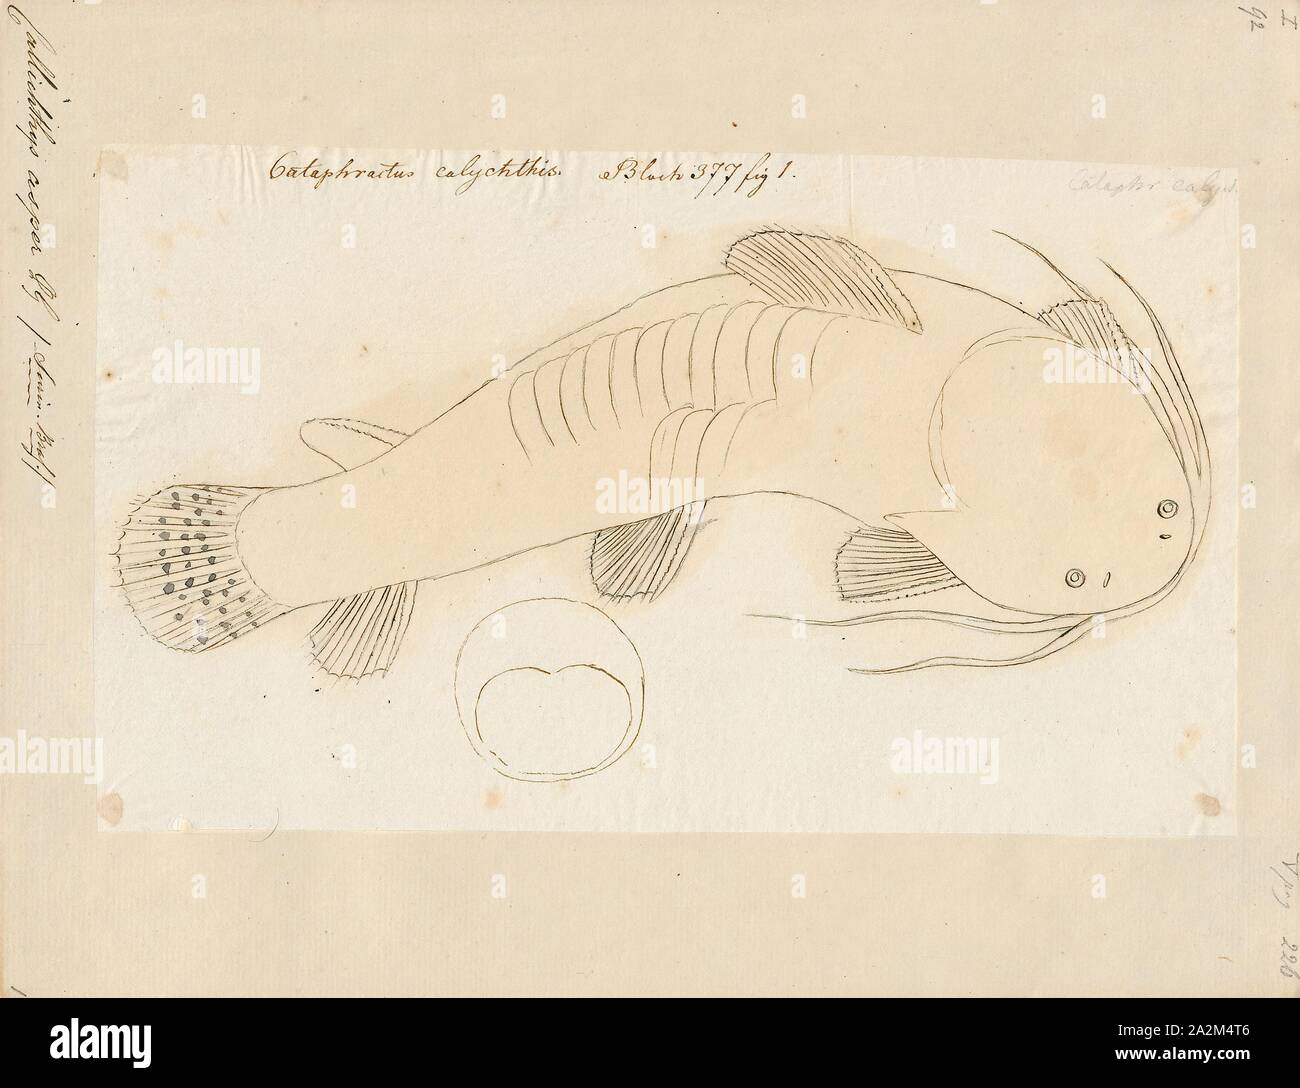 Callichthys asper, Print, 1700-1880 Stock Photo